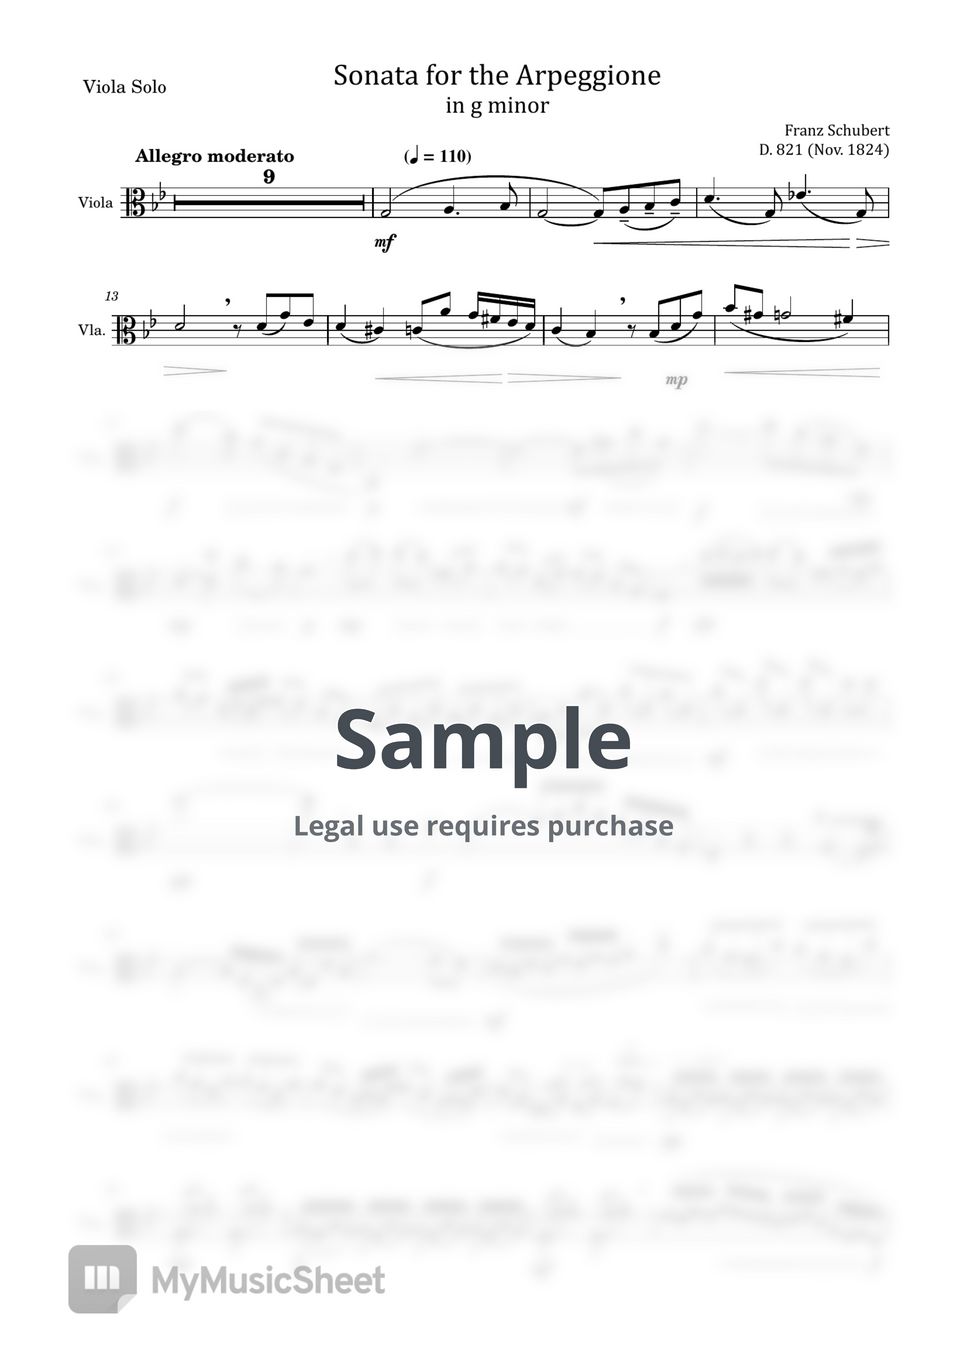 Franz Schubert - Arpeggione Sonata, D.821 (Franz Schubert - Arpeggione Sonata, D.821 in g minor - For Viola Solo Original) by poon